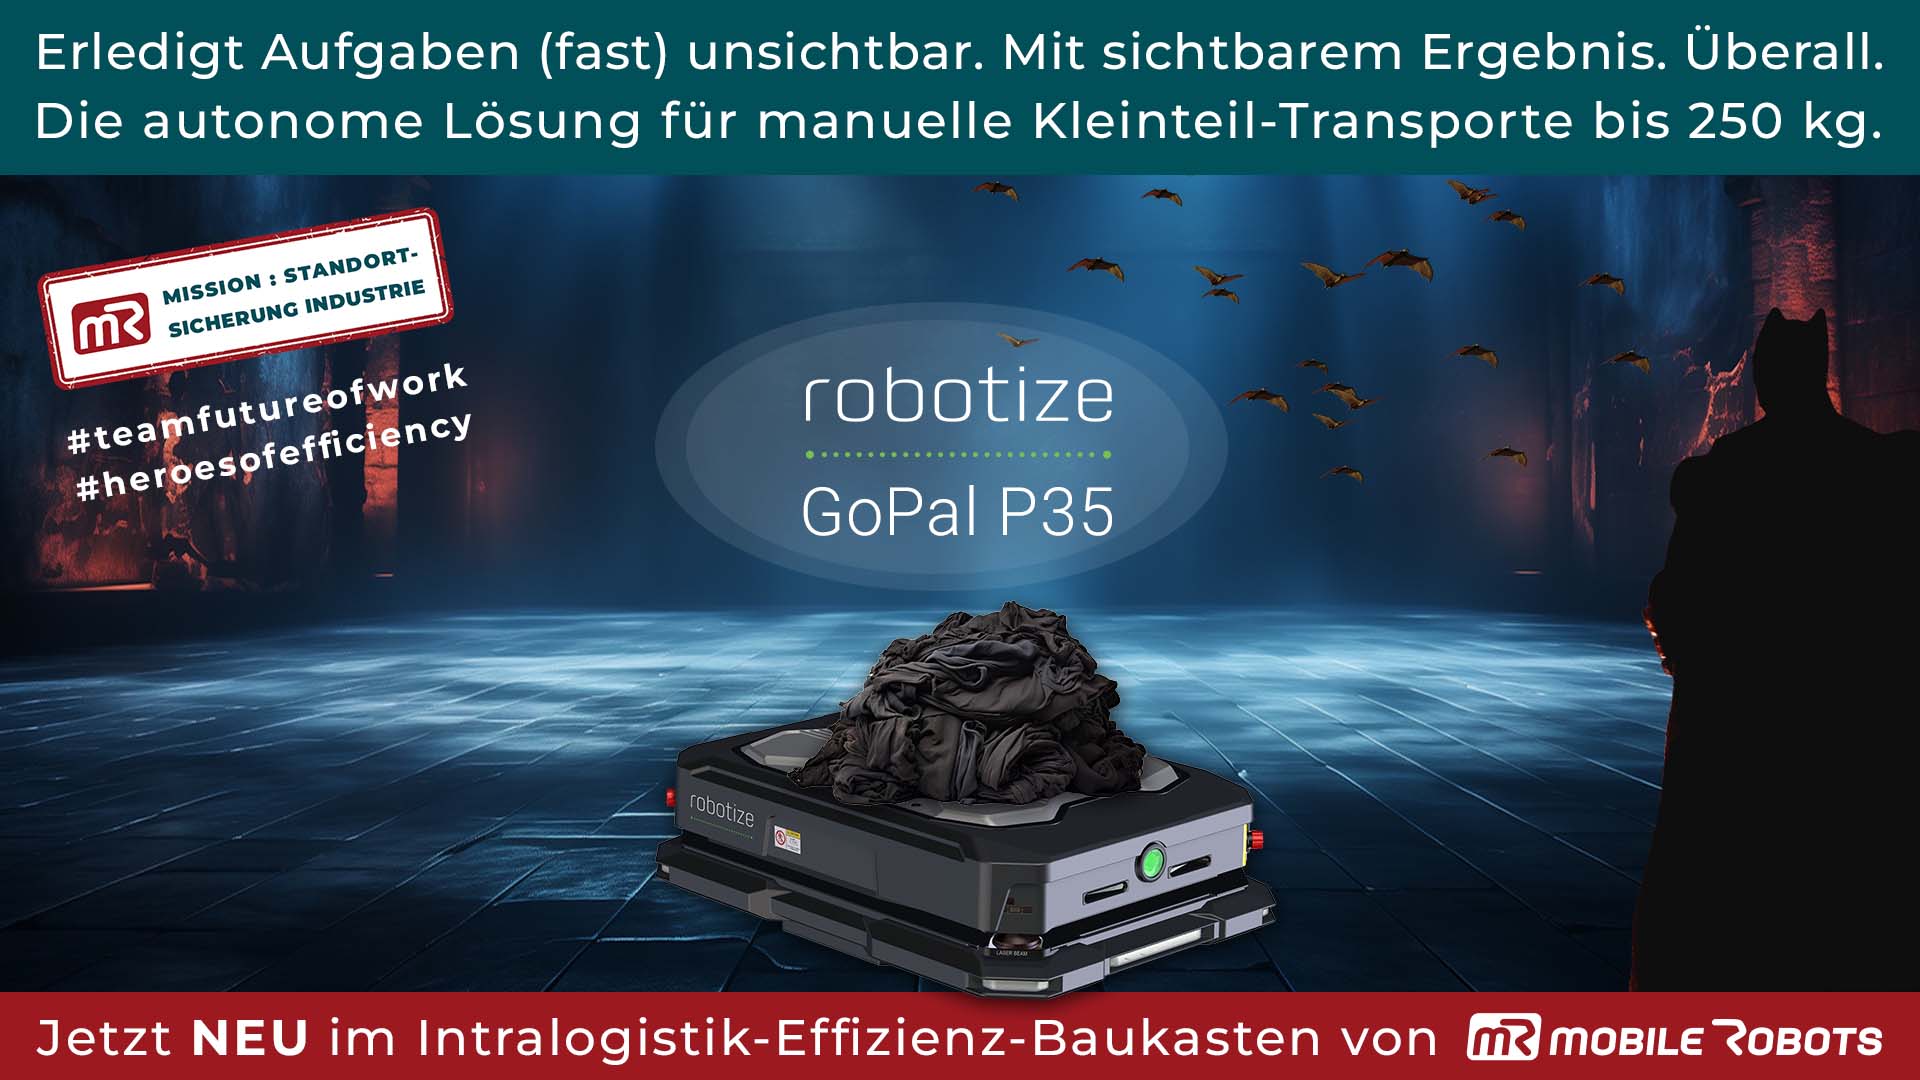 Jetzt neu bei Ihrem Integrator mR MOBILE ROBOTS: Der Robotize GoPal P35 eröffnet neue Perspektiven für Ihre autonome Intralogistik.